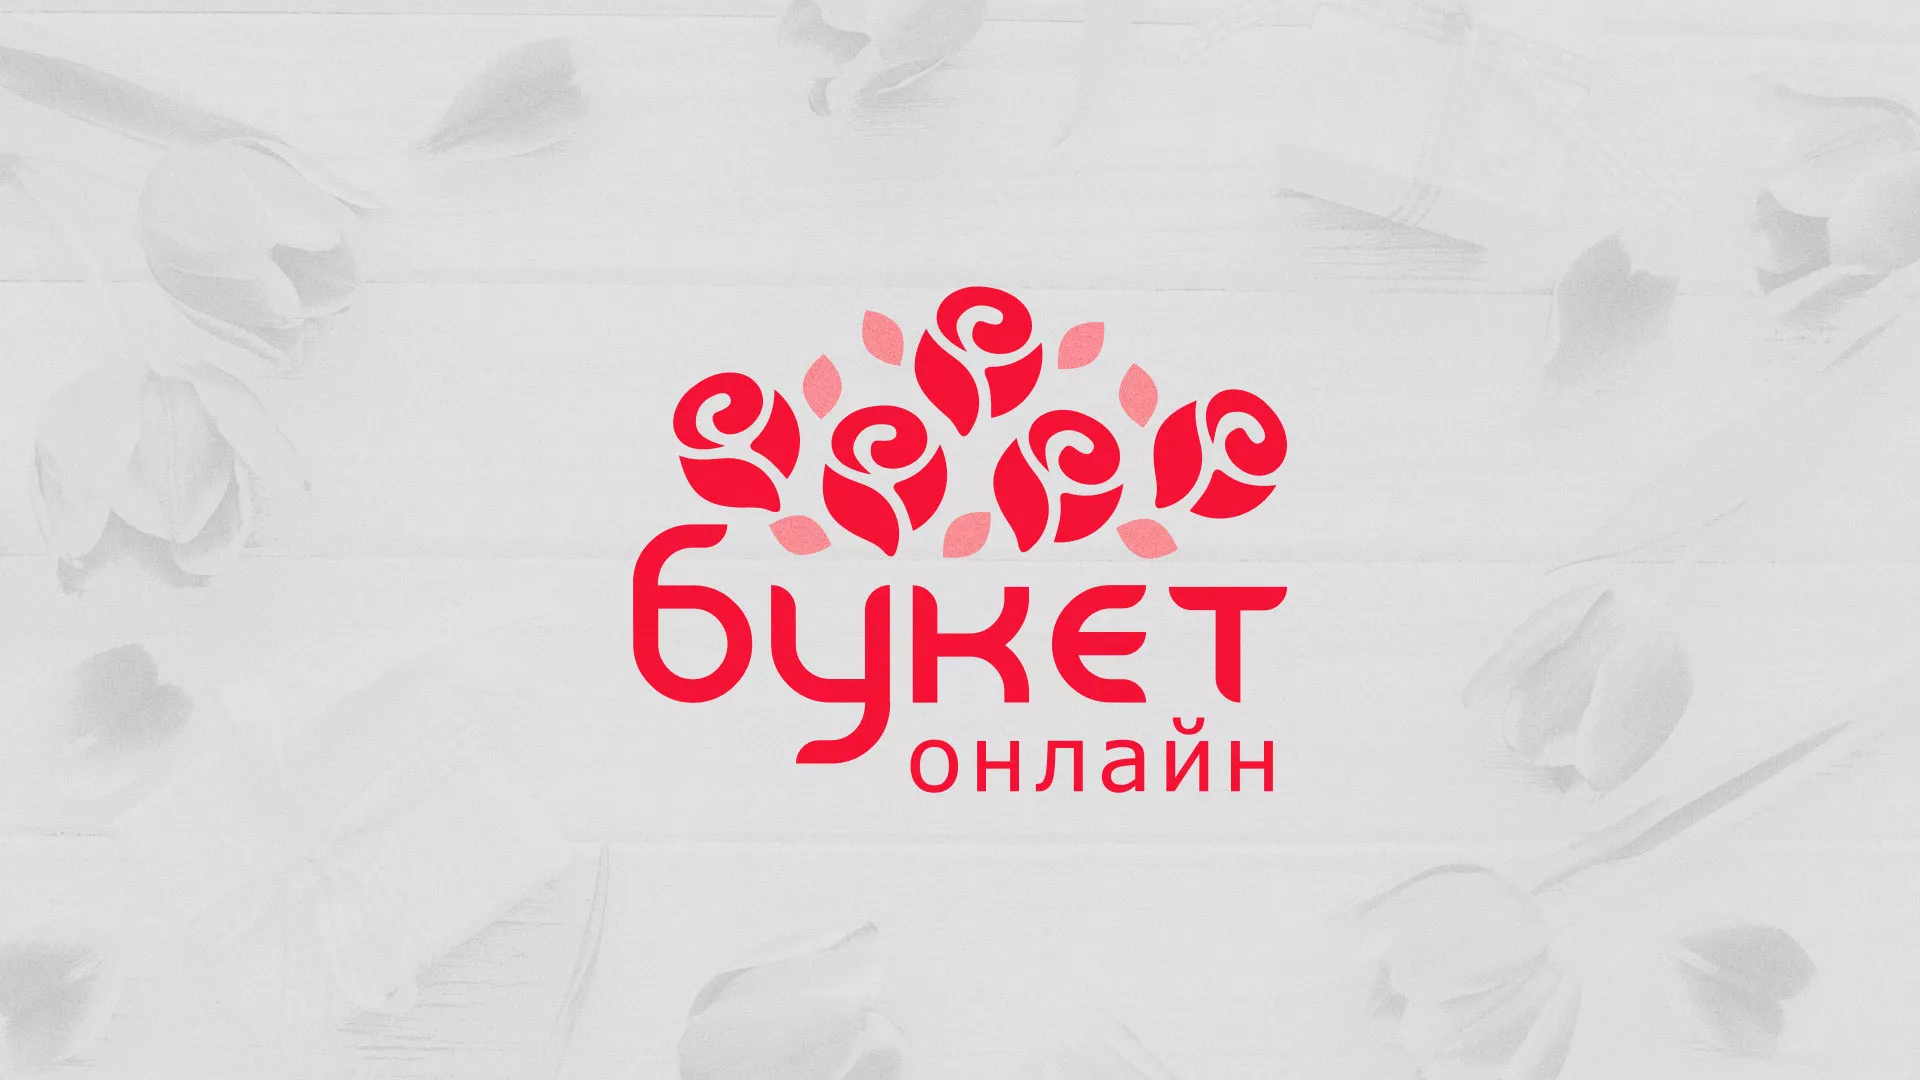 Создание интернет-магазина «Букет-онлайн» по цветам в Рассказово